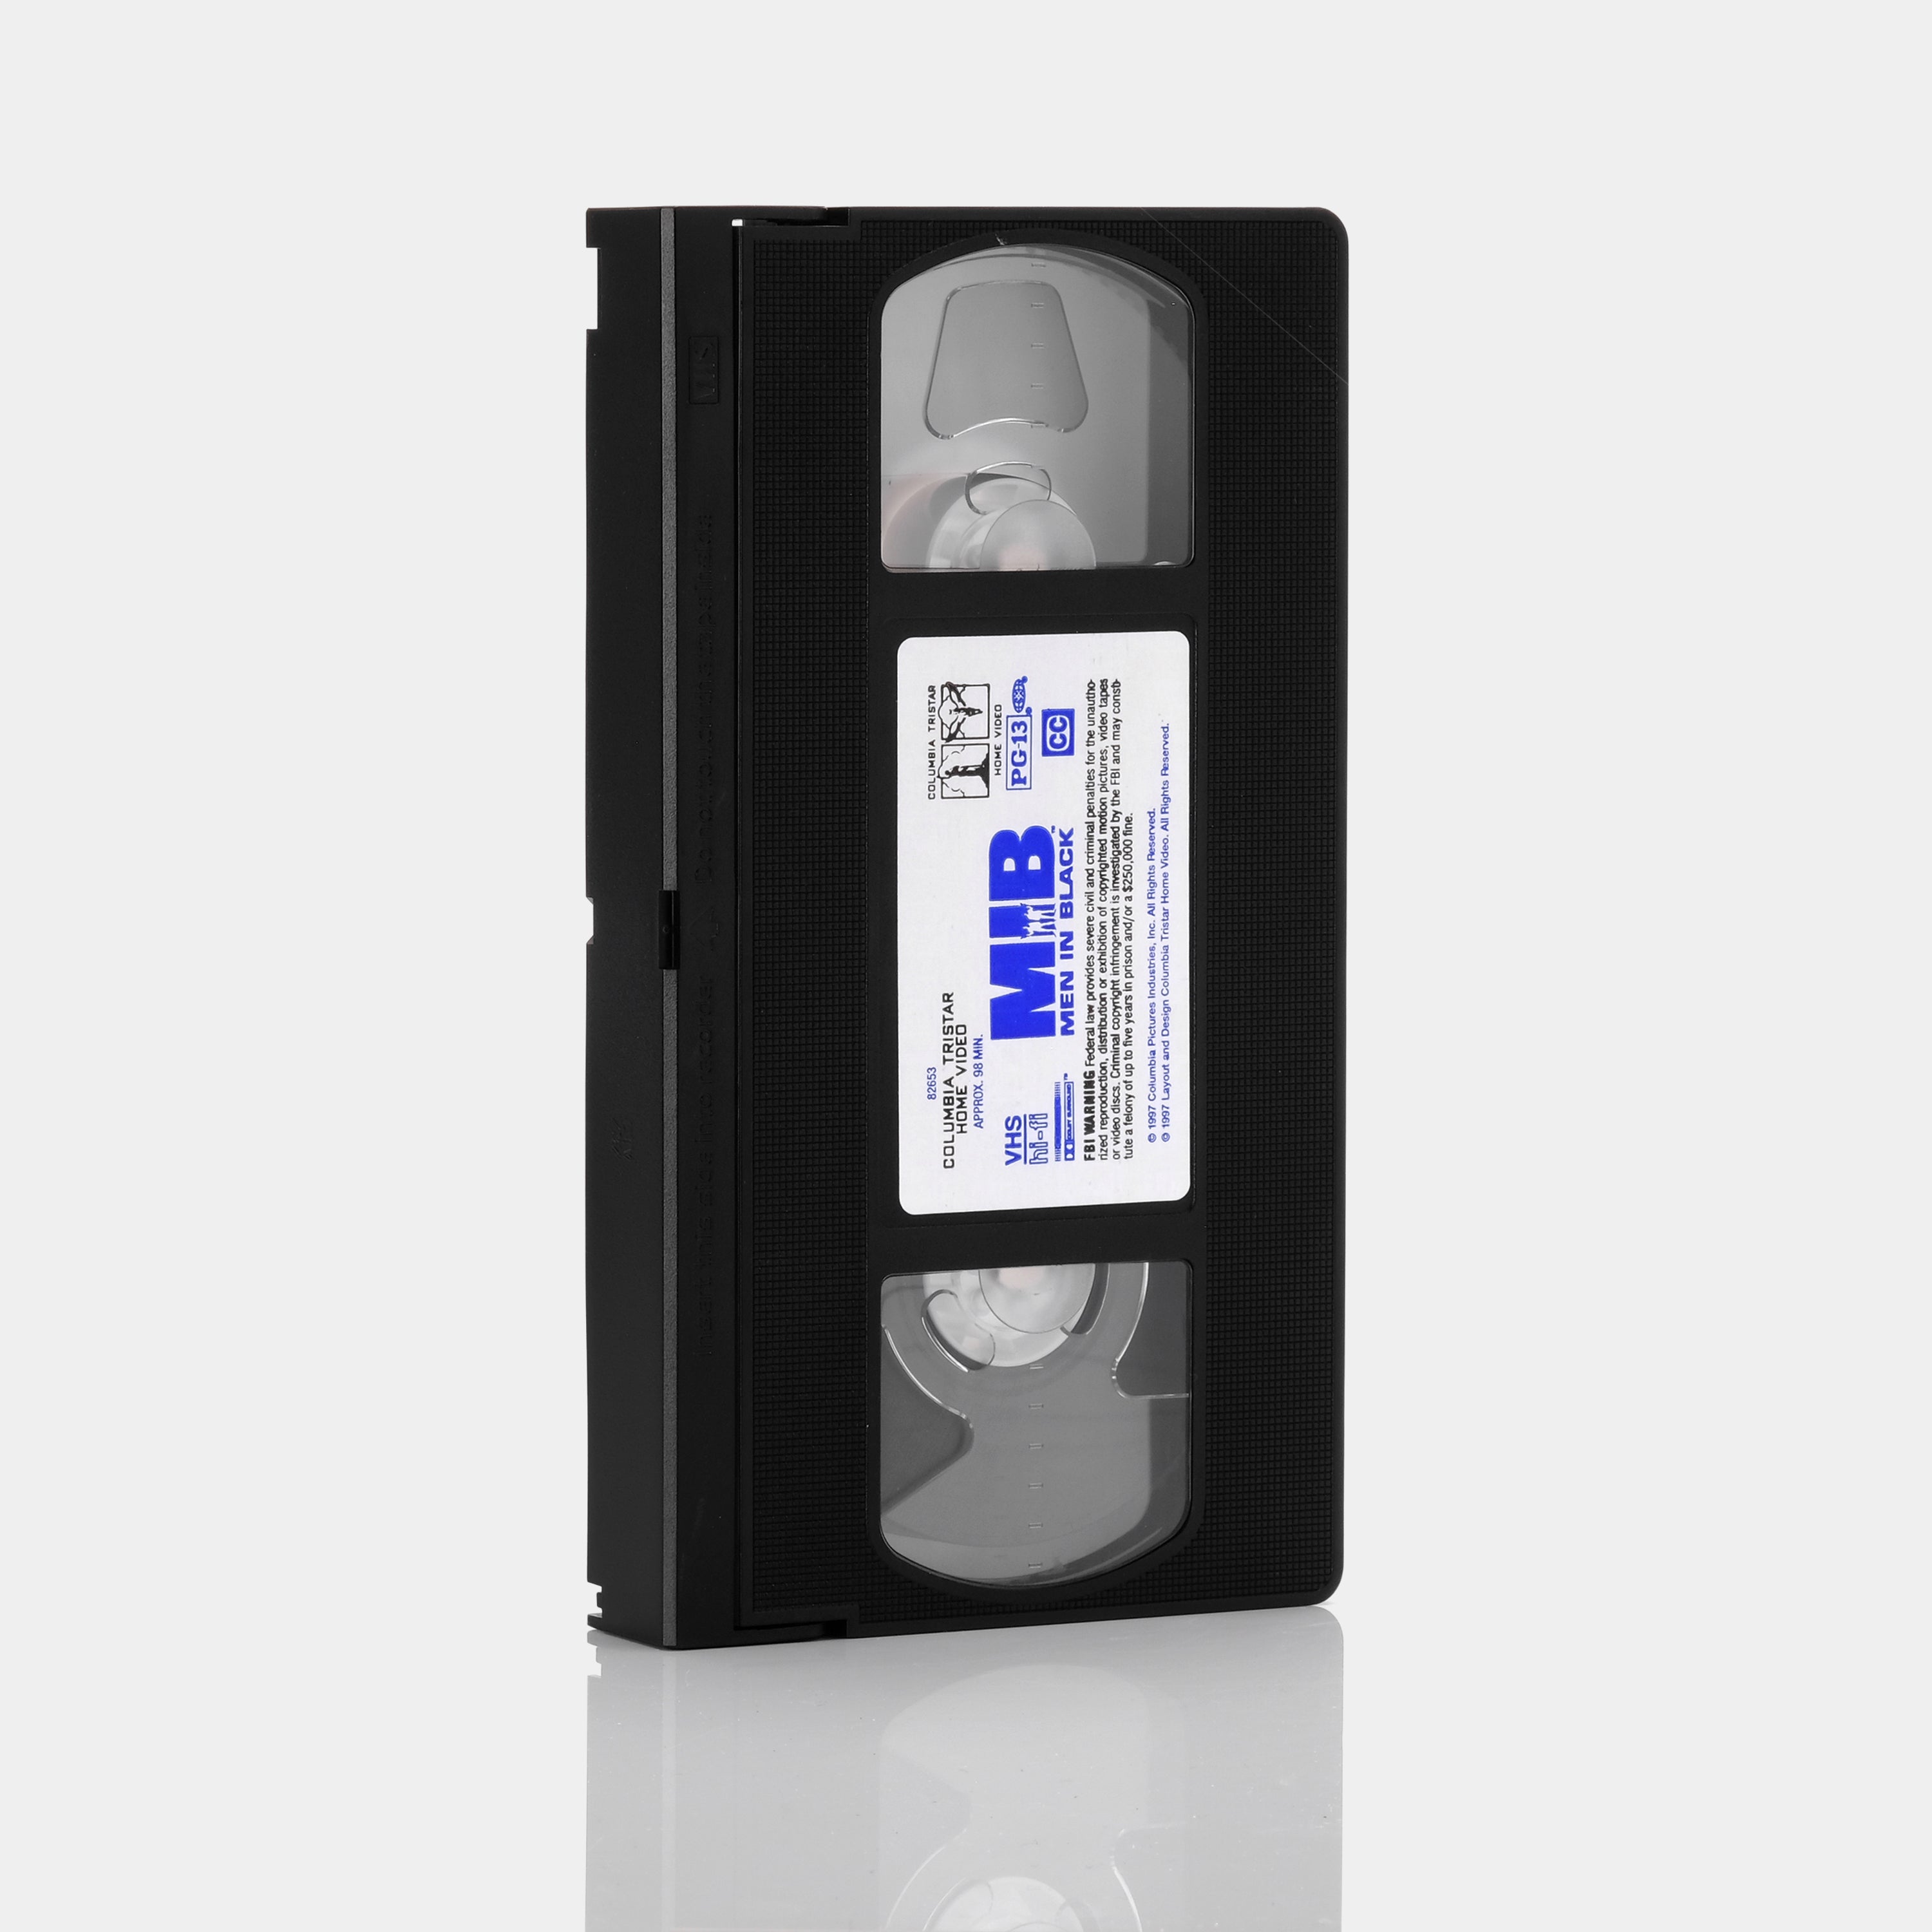 Men in Black VHS Tape